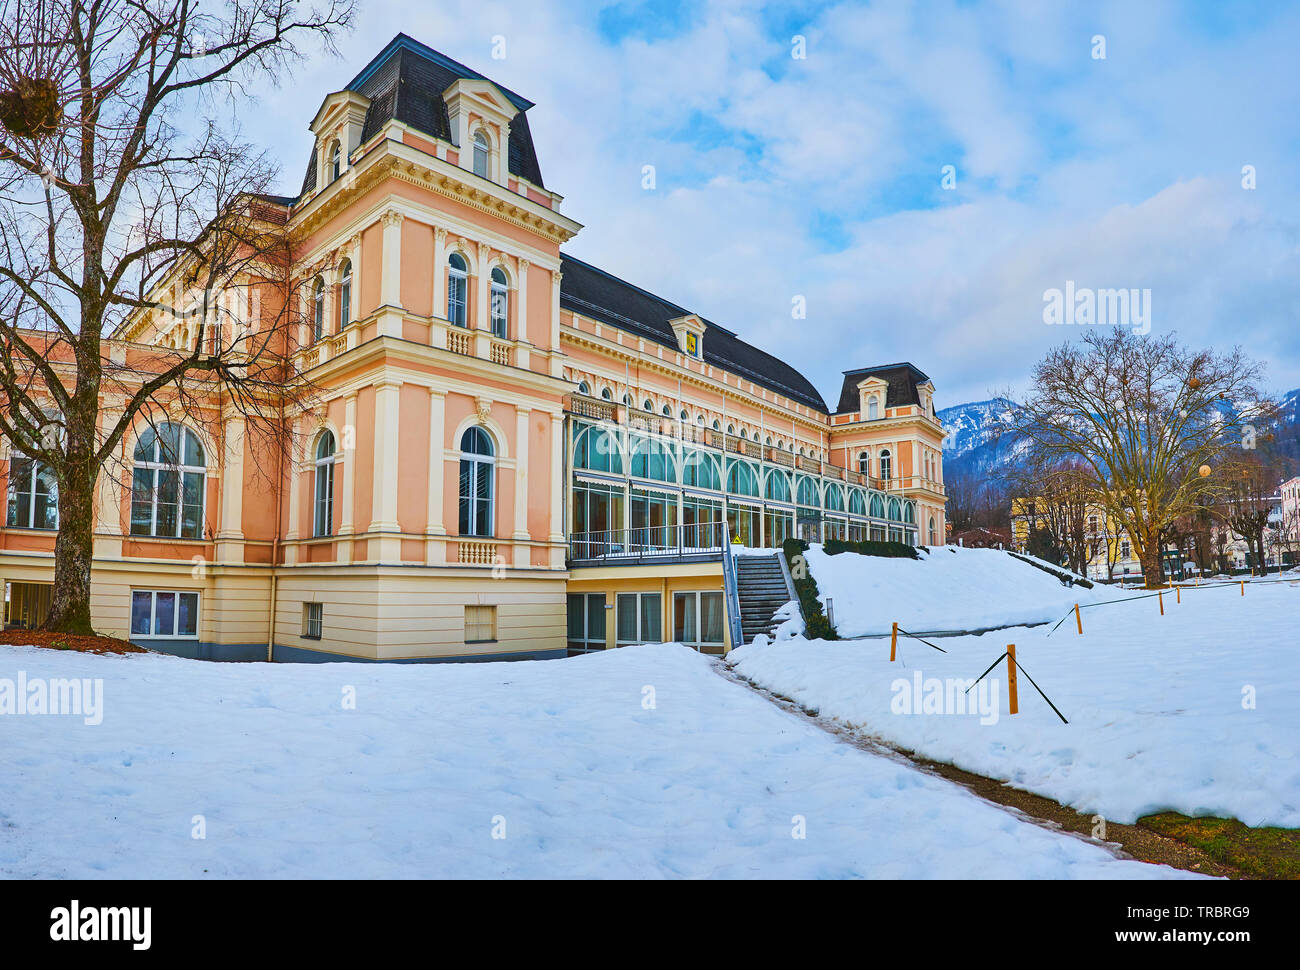 Im imperialen Stil Gebäude der Kongress- und Theaterhaus, durch die verschneiten Garten umgeben, Bad Ischl, Salzkammergut, Österreich Stockfoto